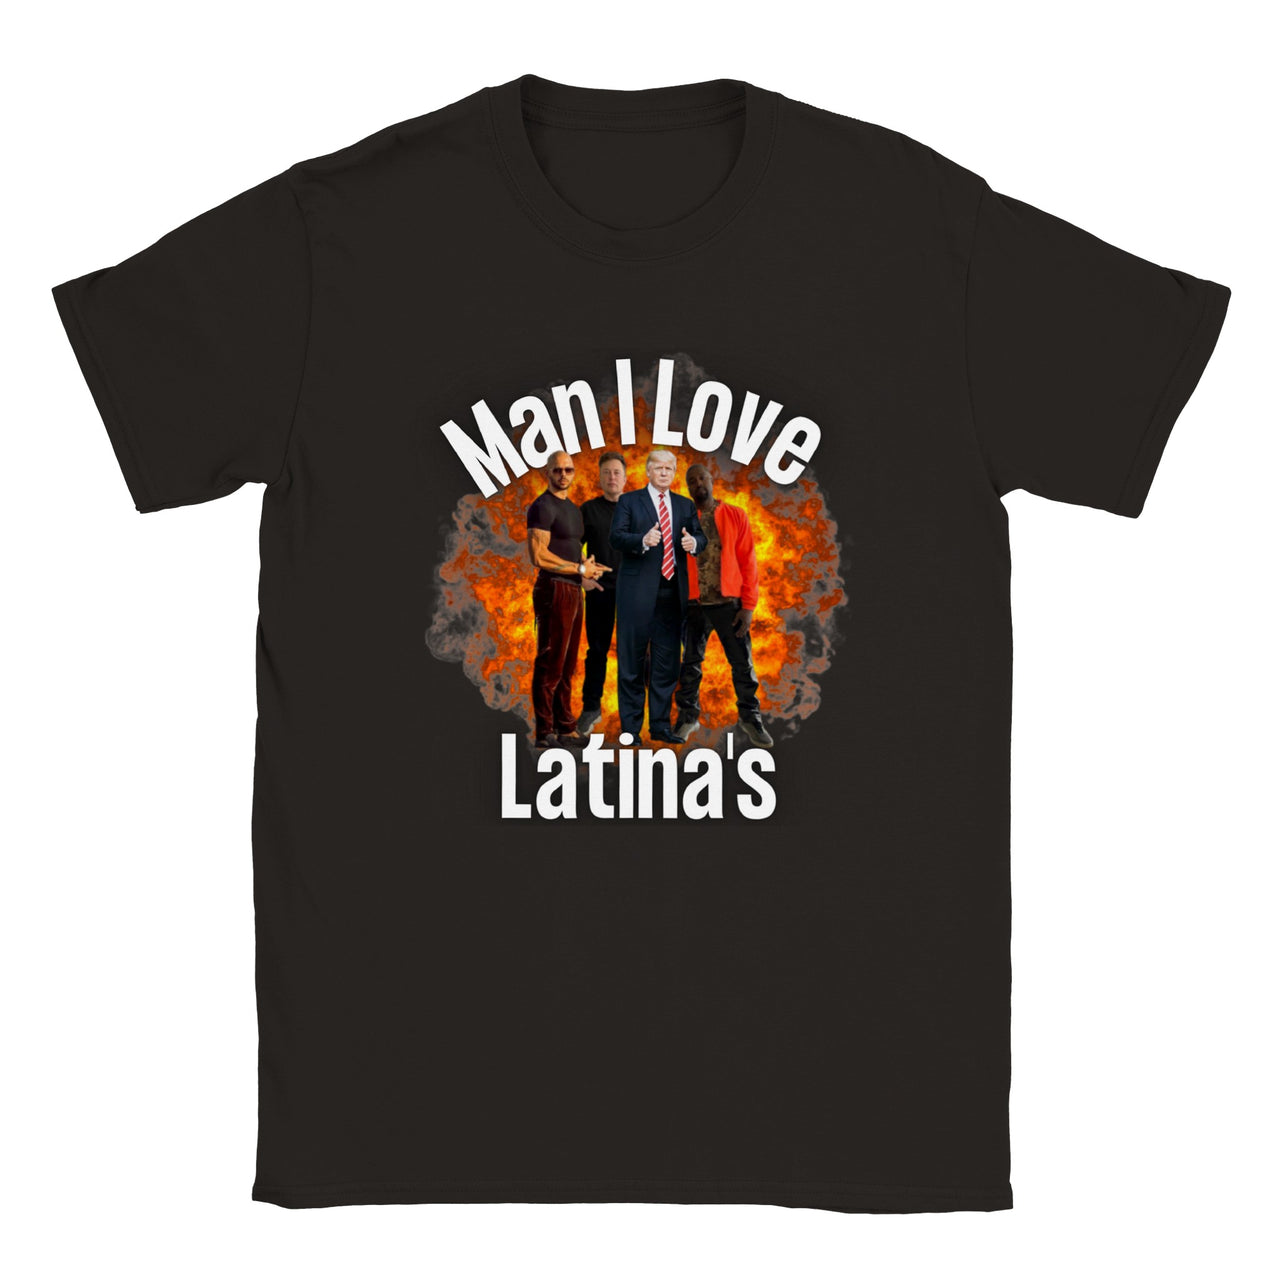 Man I Love Latina's T-Shirt